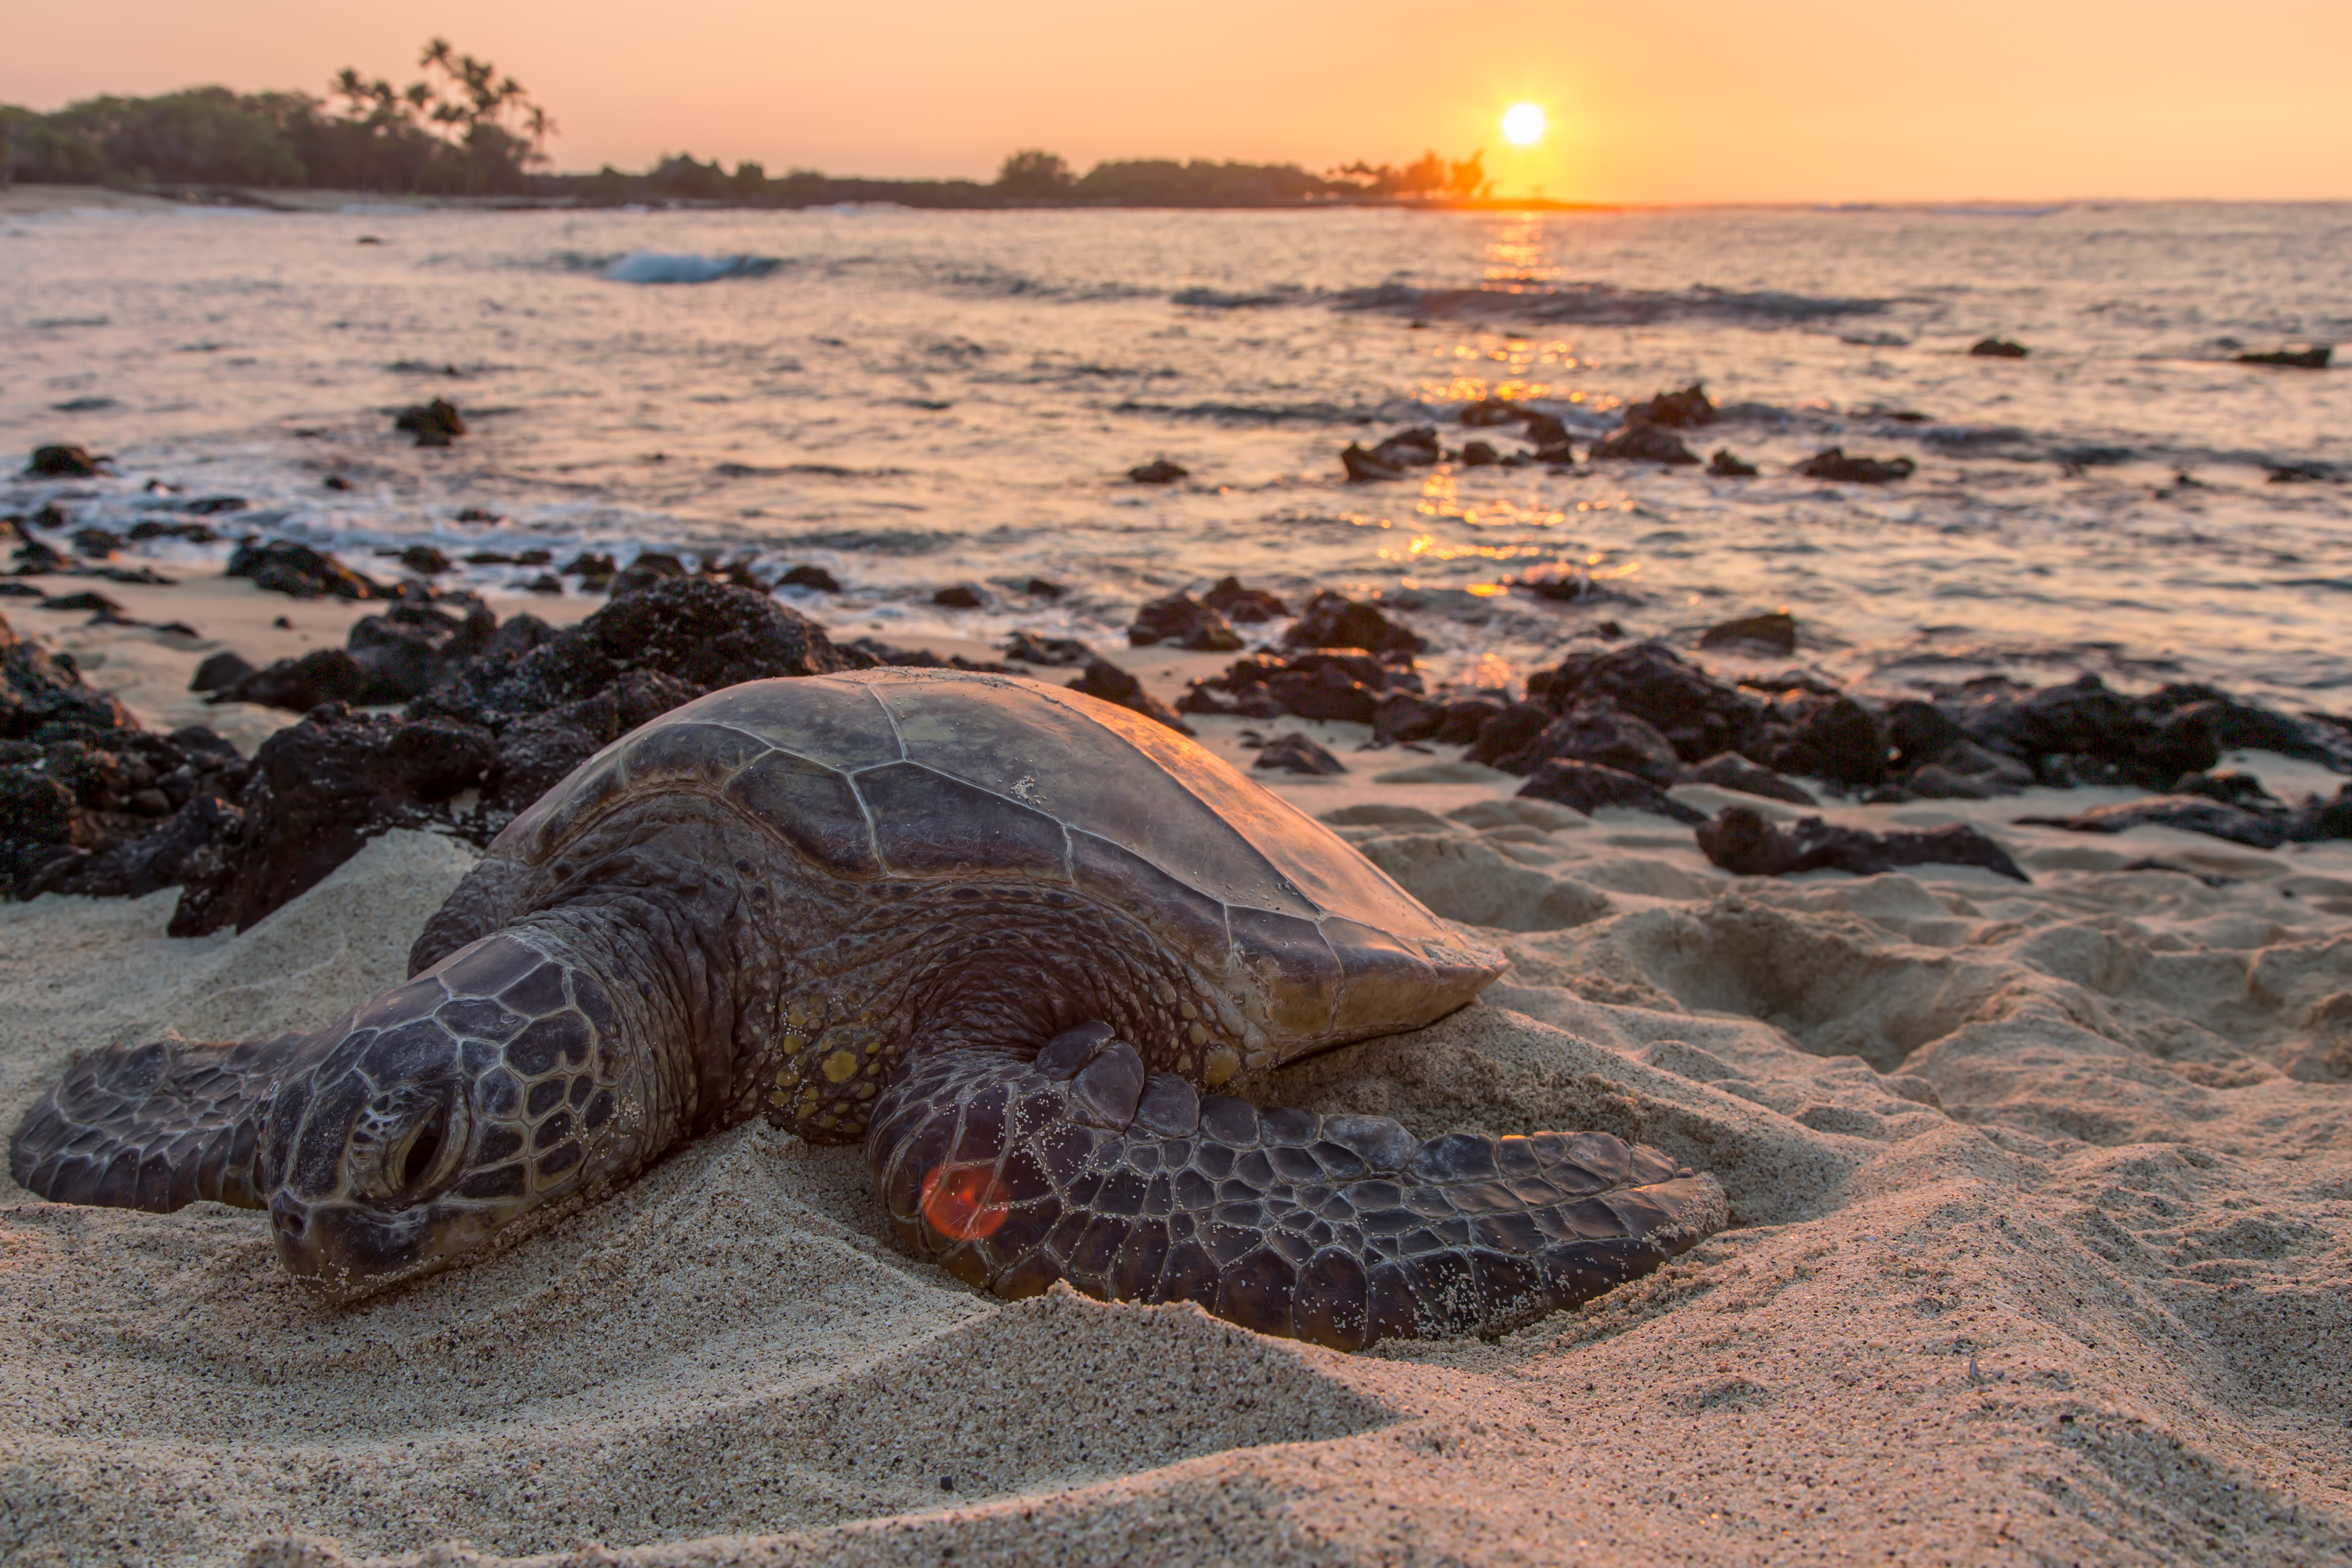 Meeresschildkröte liegt am Strand, im Hintergrund ein Sonnenuntergang